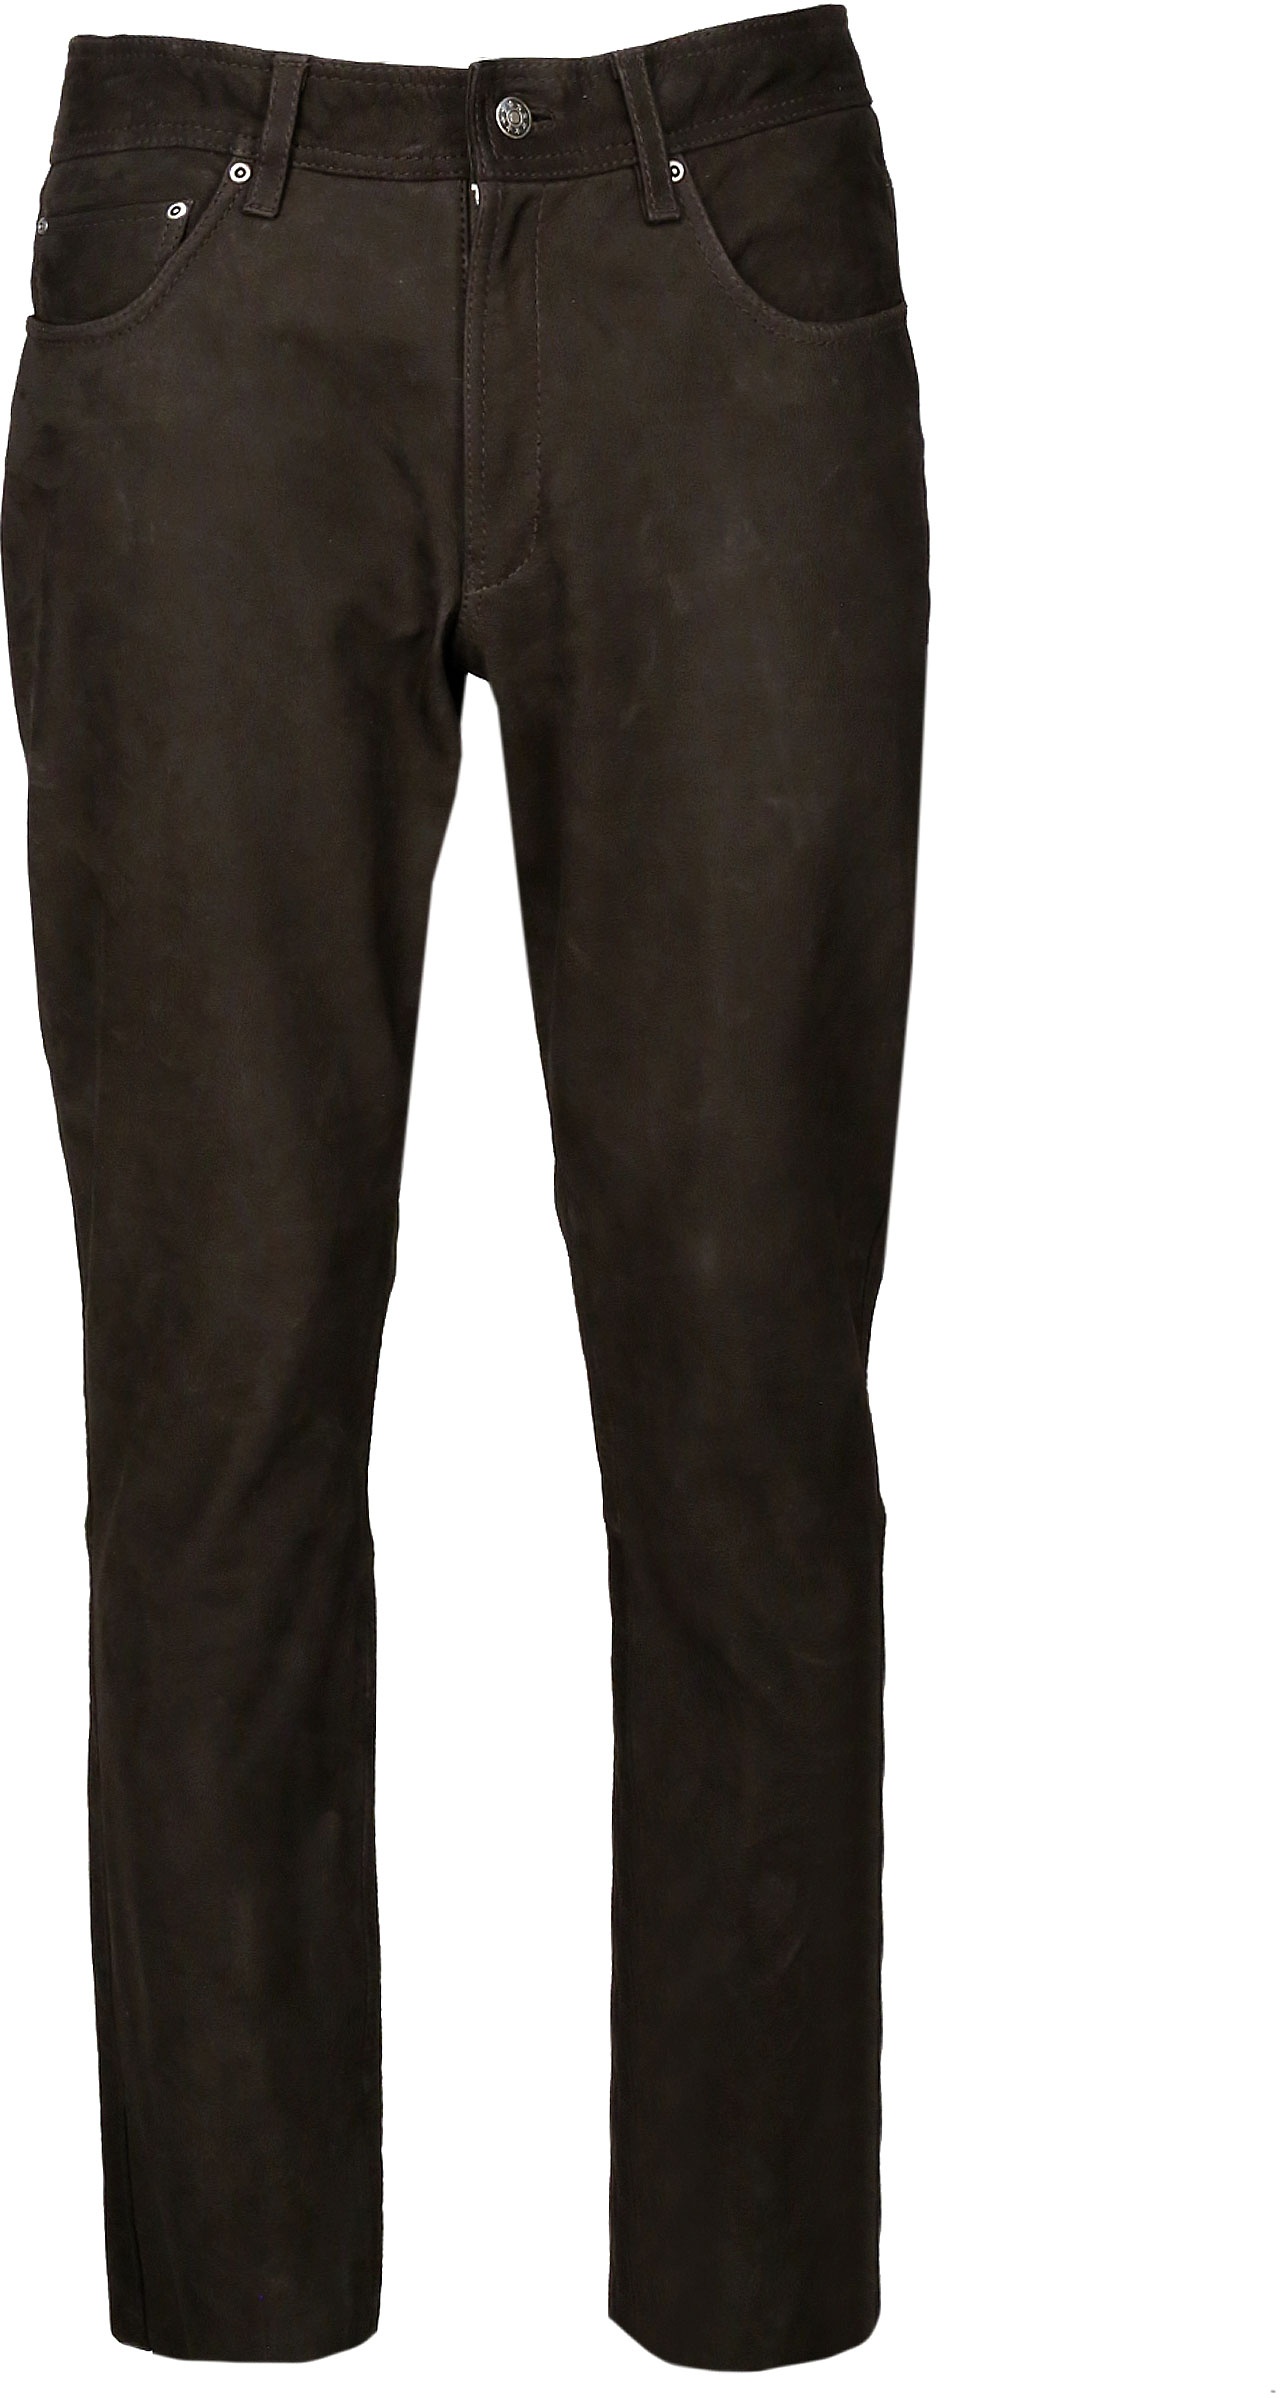 JCC Phill, pantalon en cuir - Marron Foncé - 54